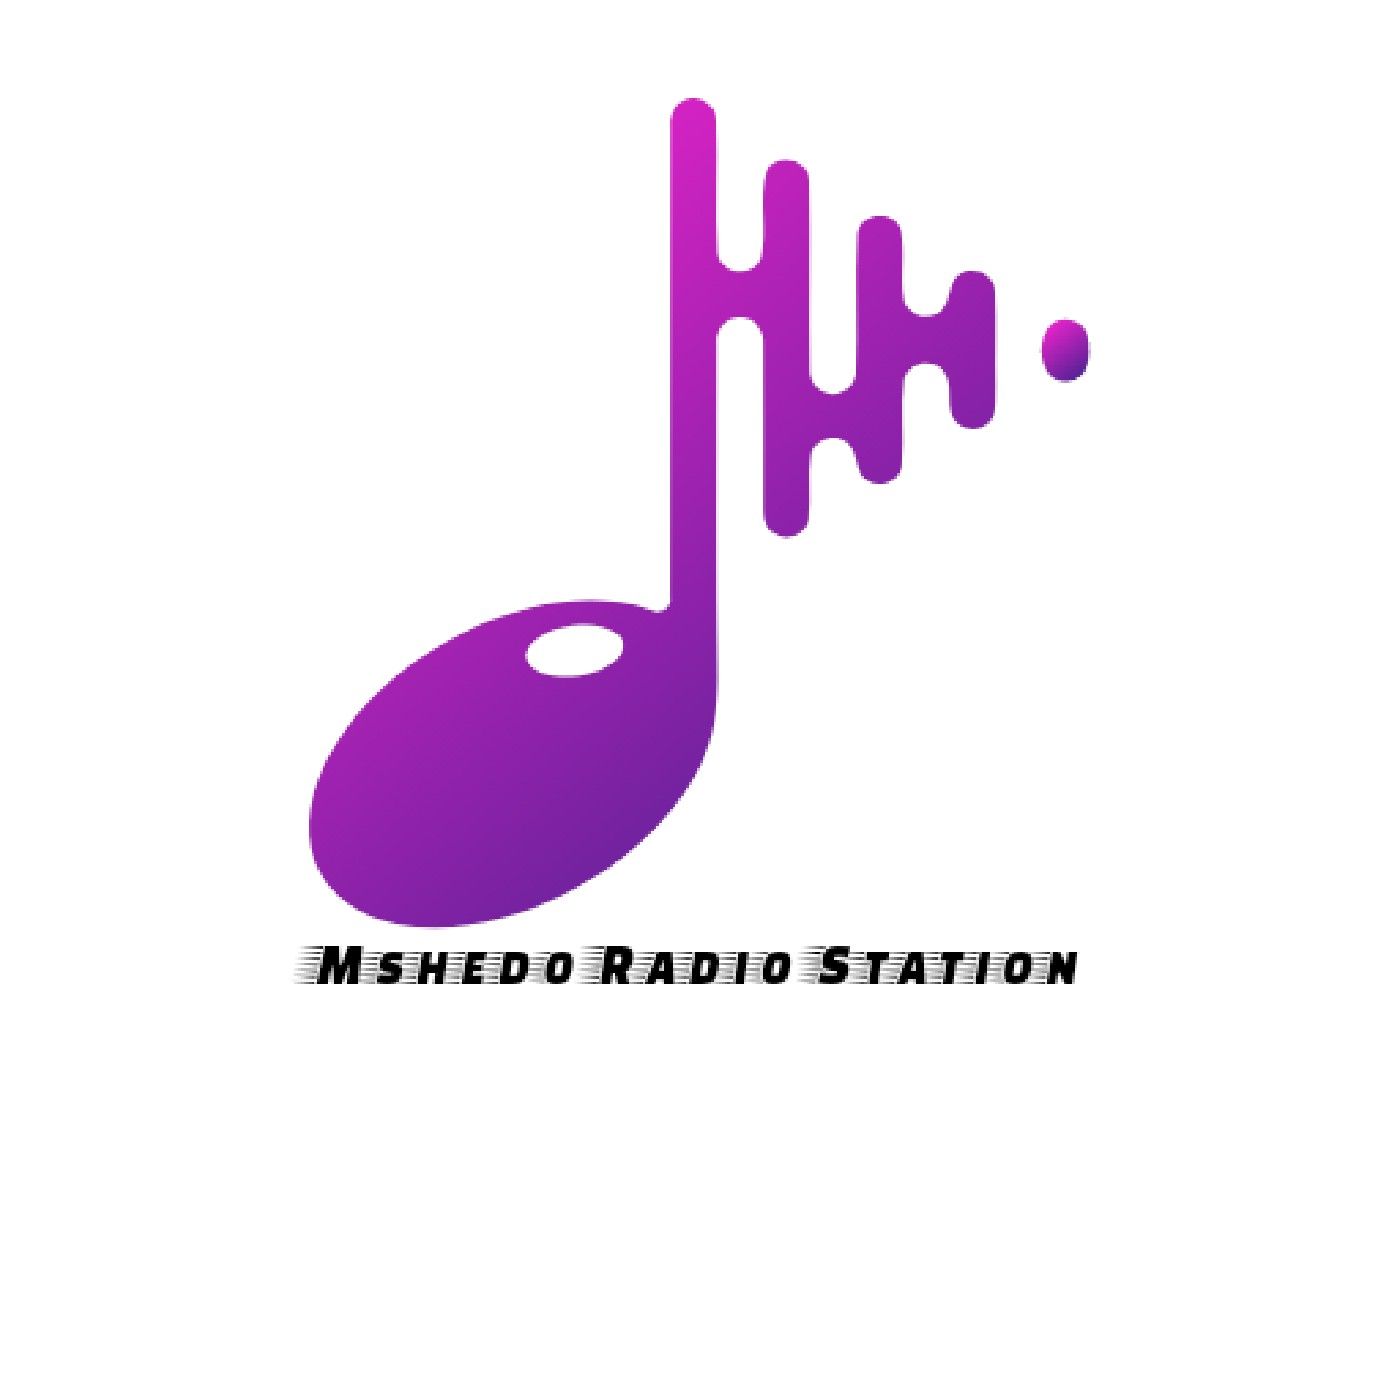 Episode 22 - Mshedo FM